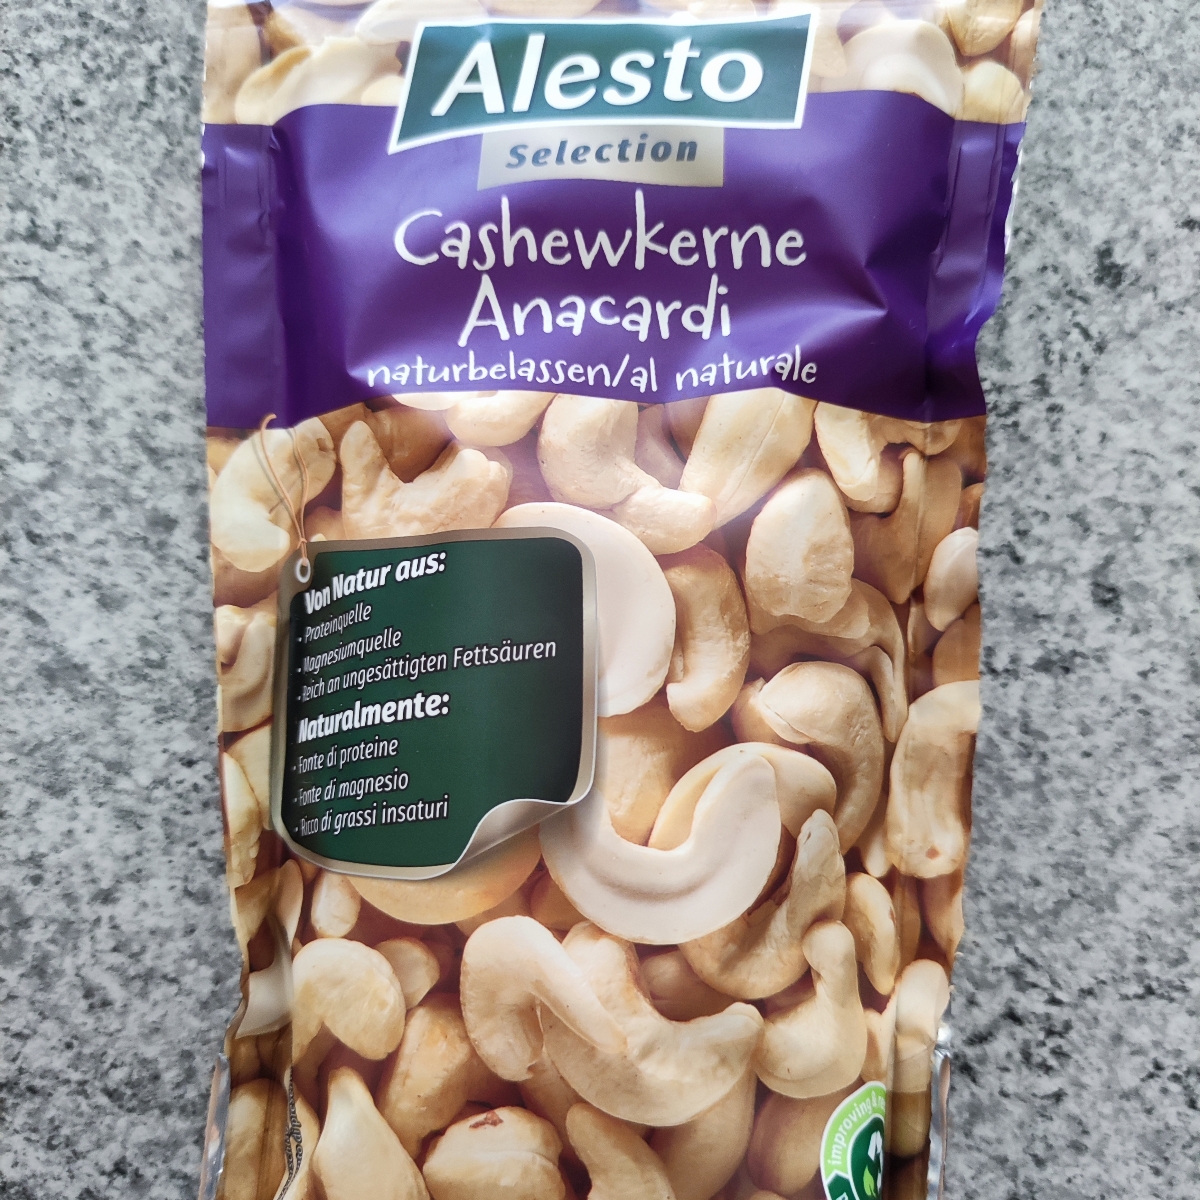 Alesto Cashew Nuts Review | abillion